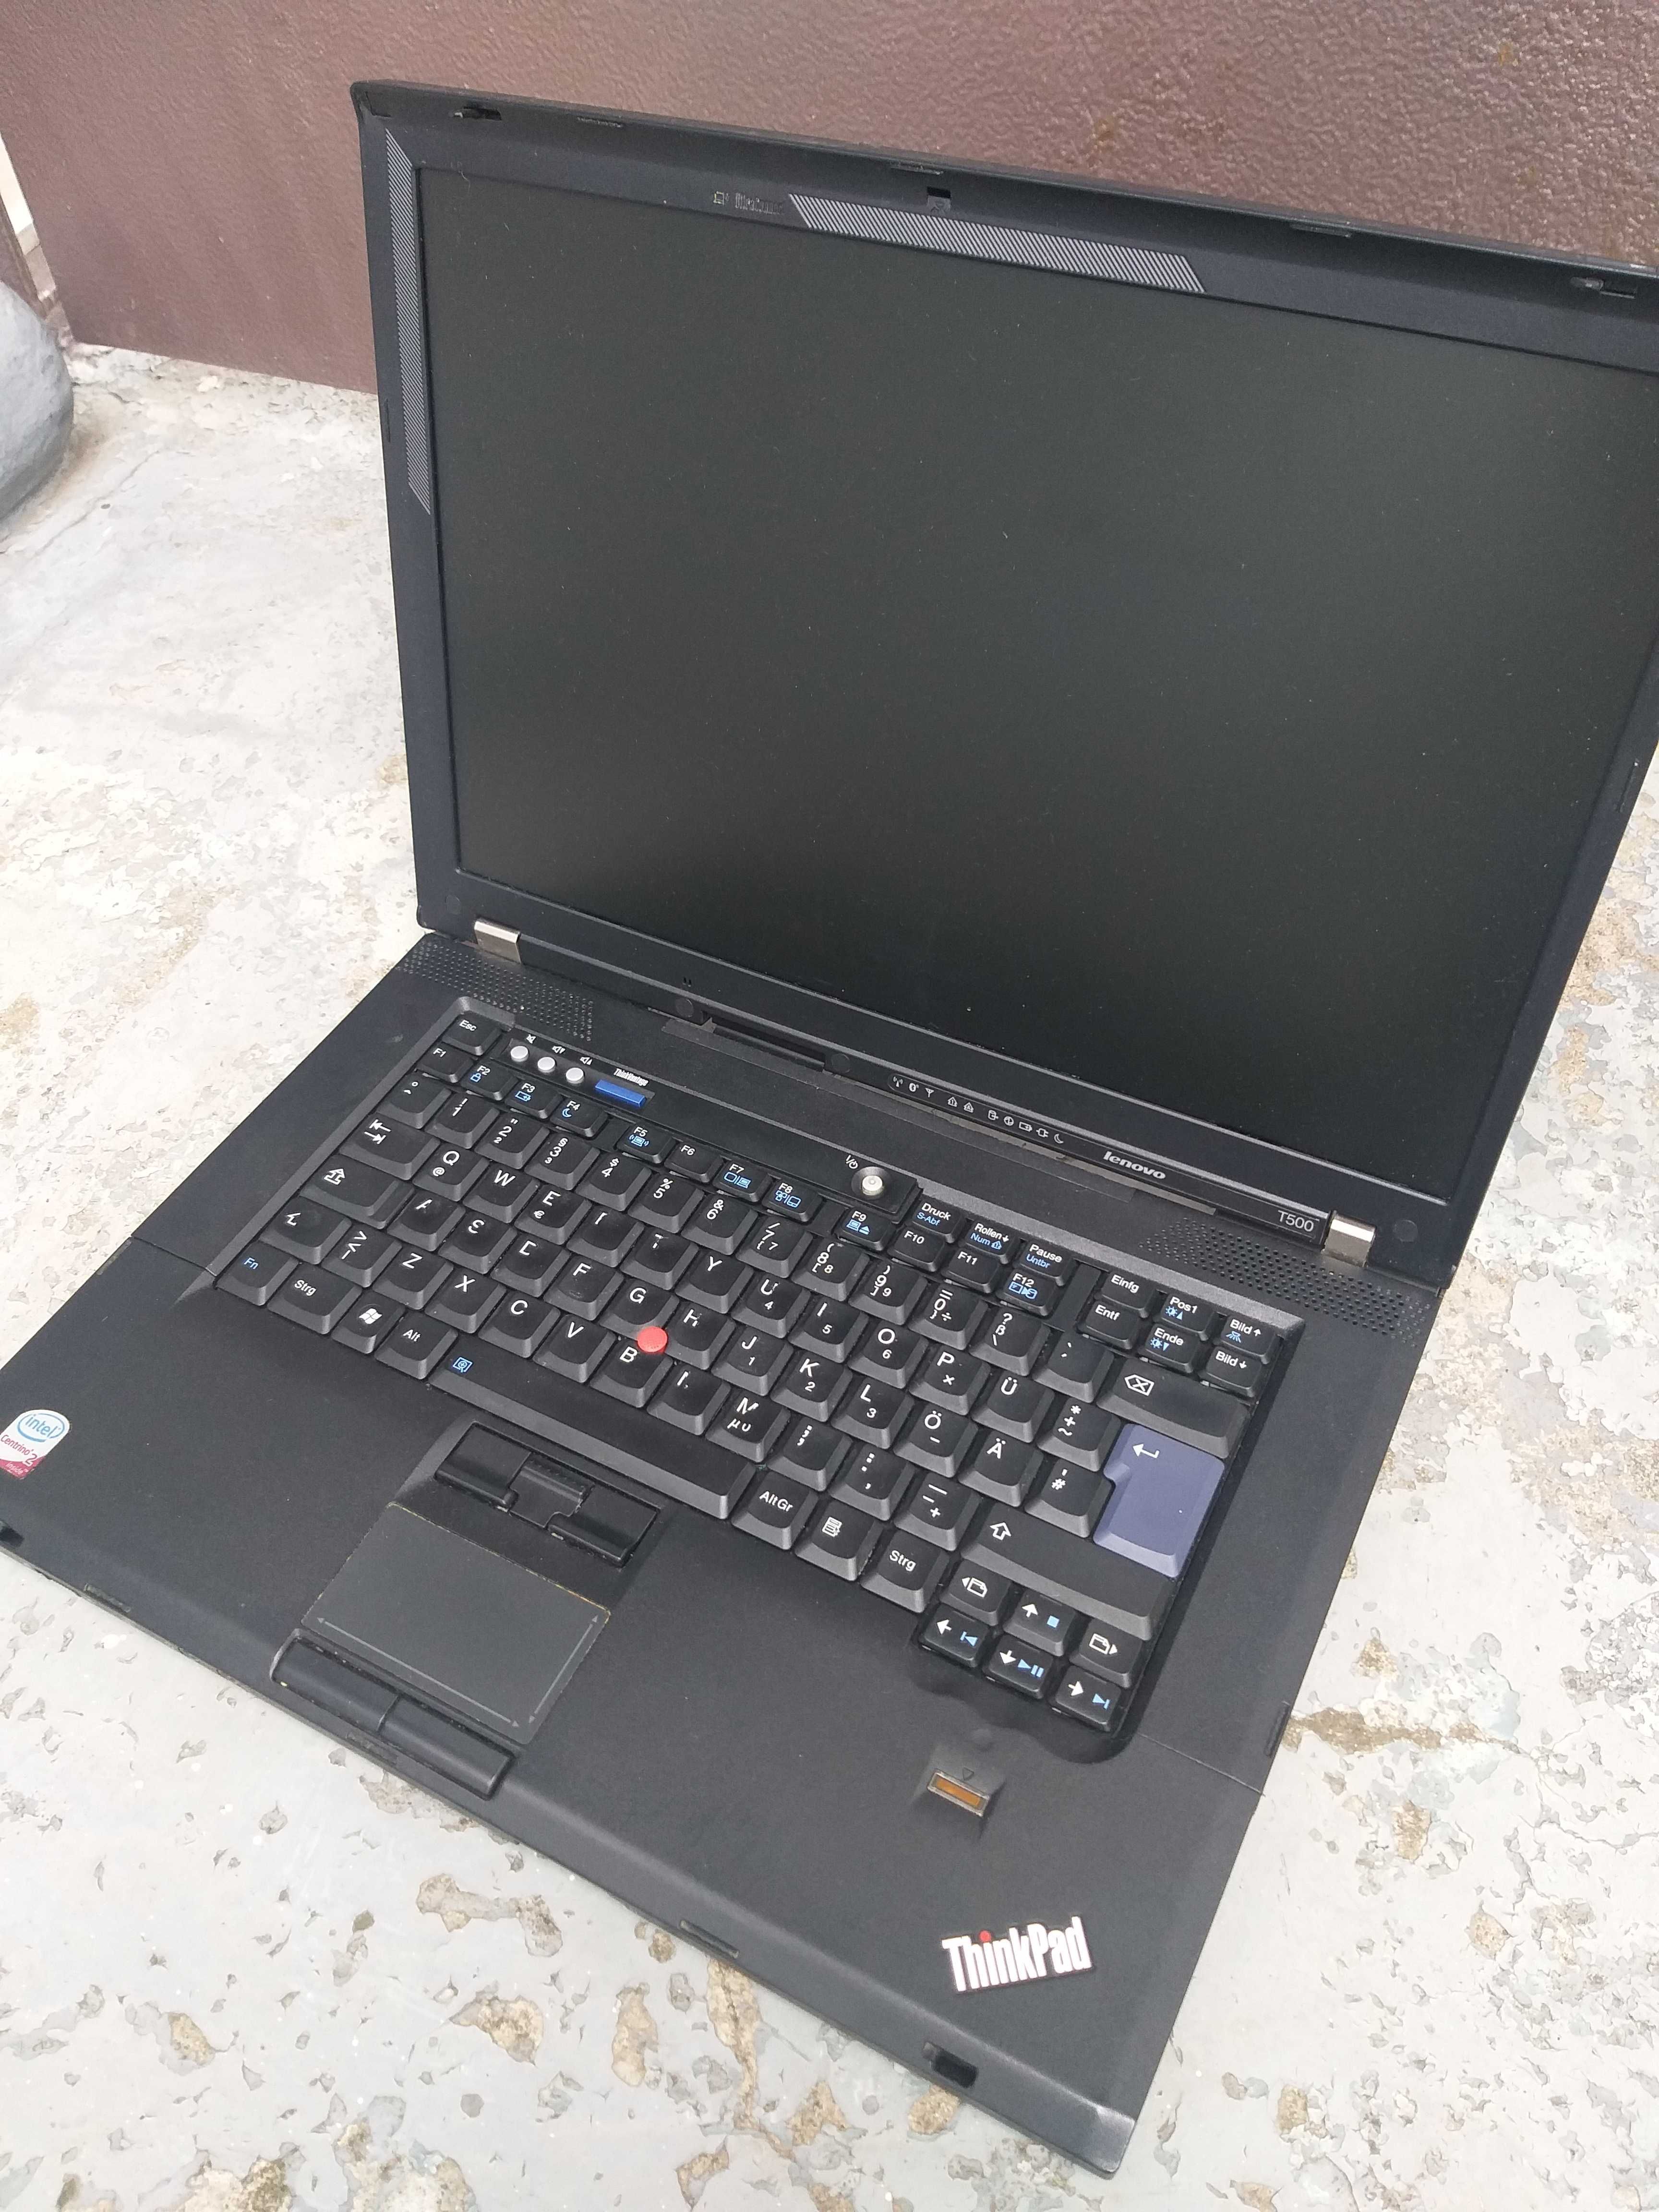 Ноутбук Lenovo ThinkPad T500 робочий, по запчастинах